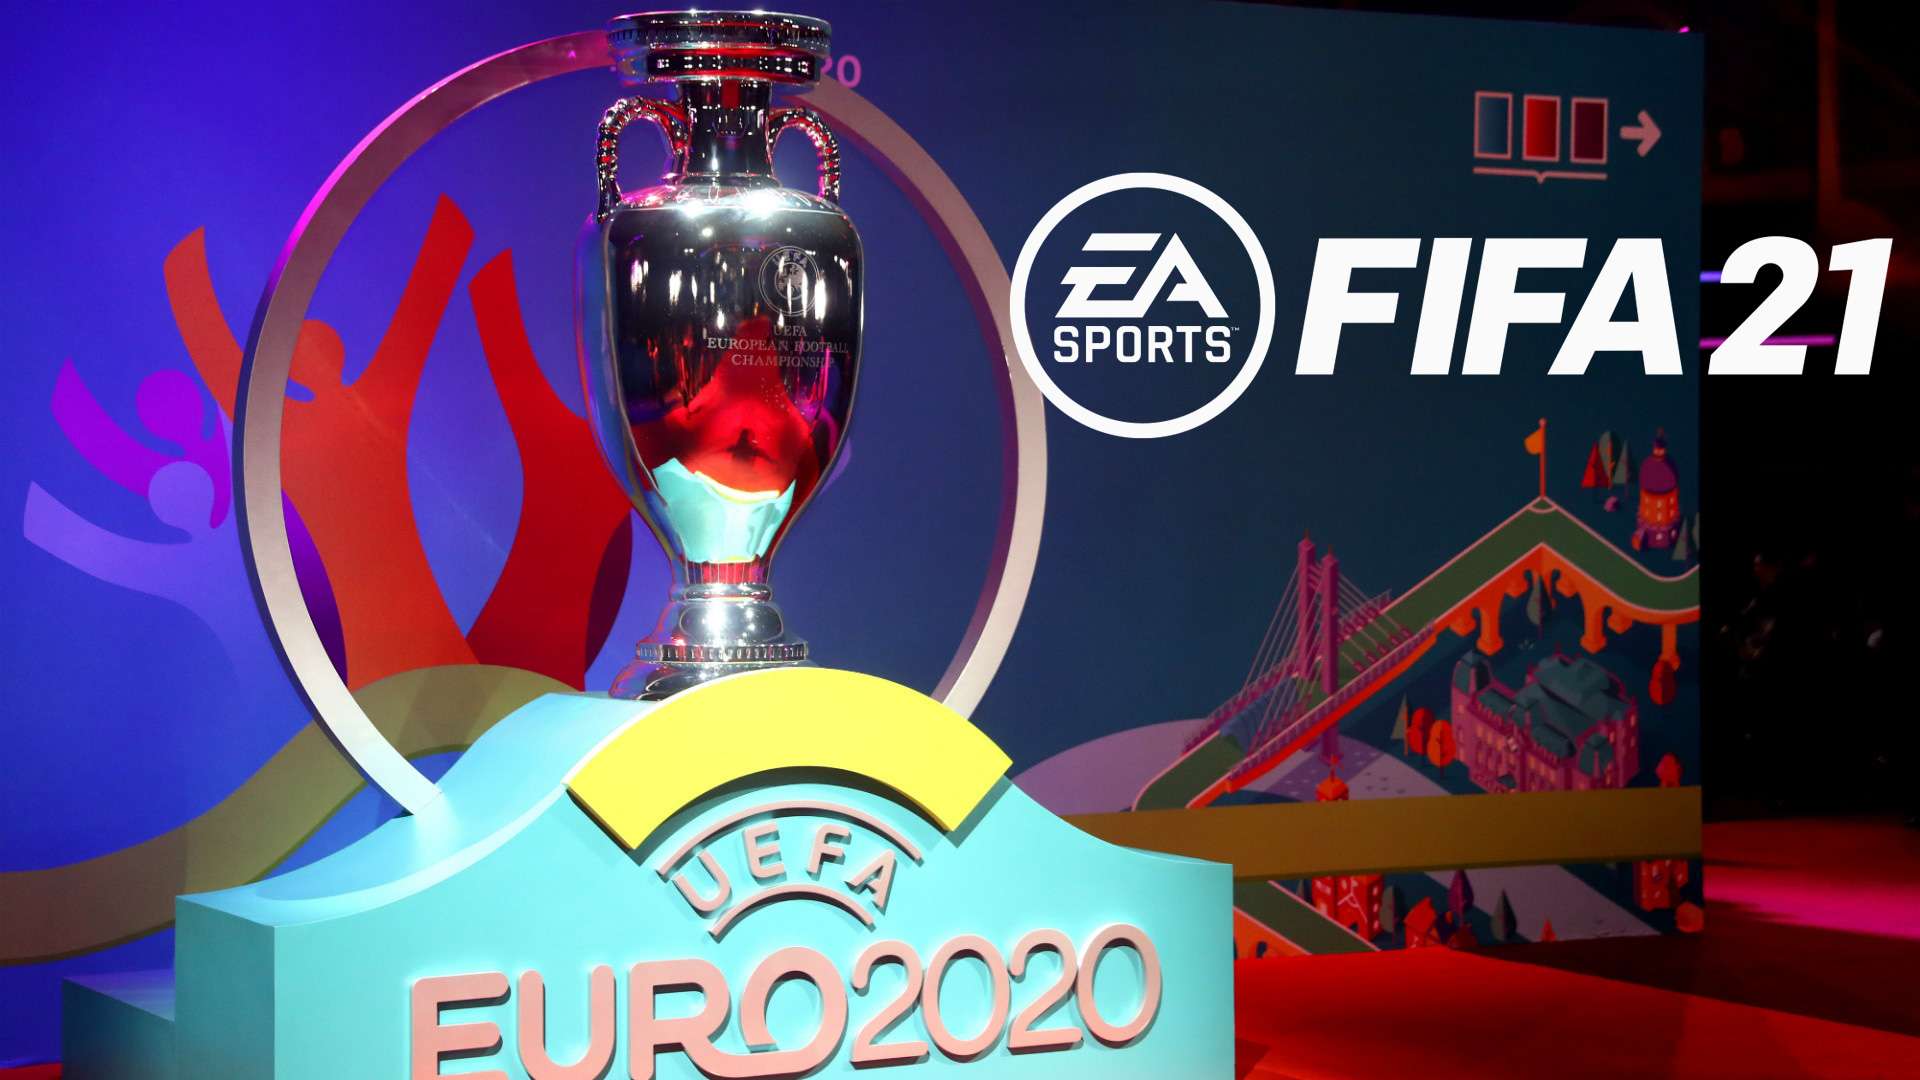 GFX EURO 2020 FIFA 21 logo